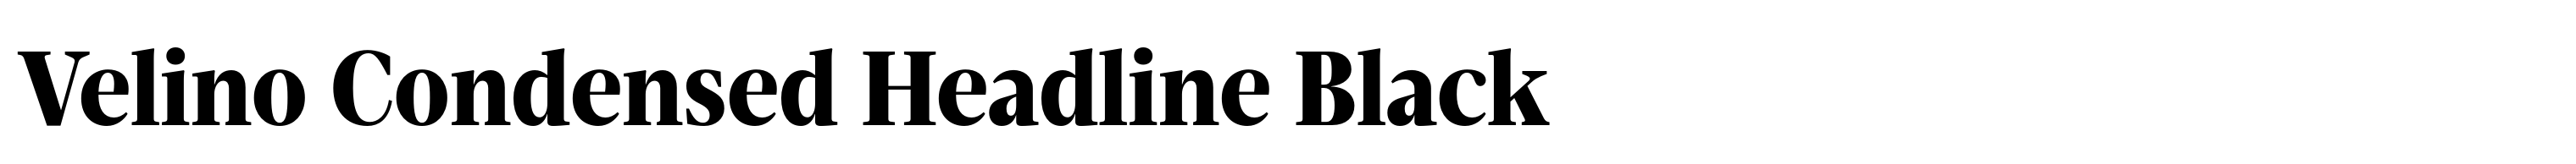 Velino Condensed Headline Black